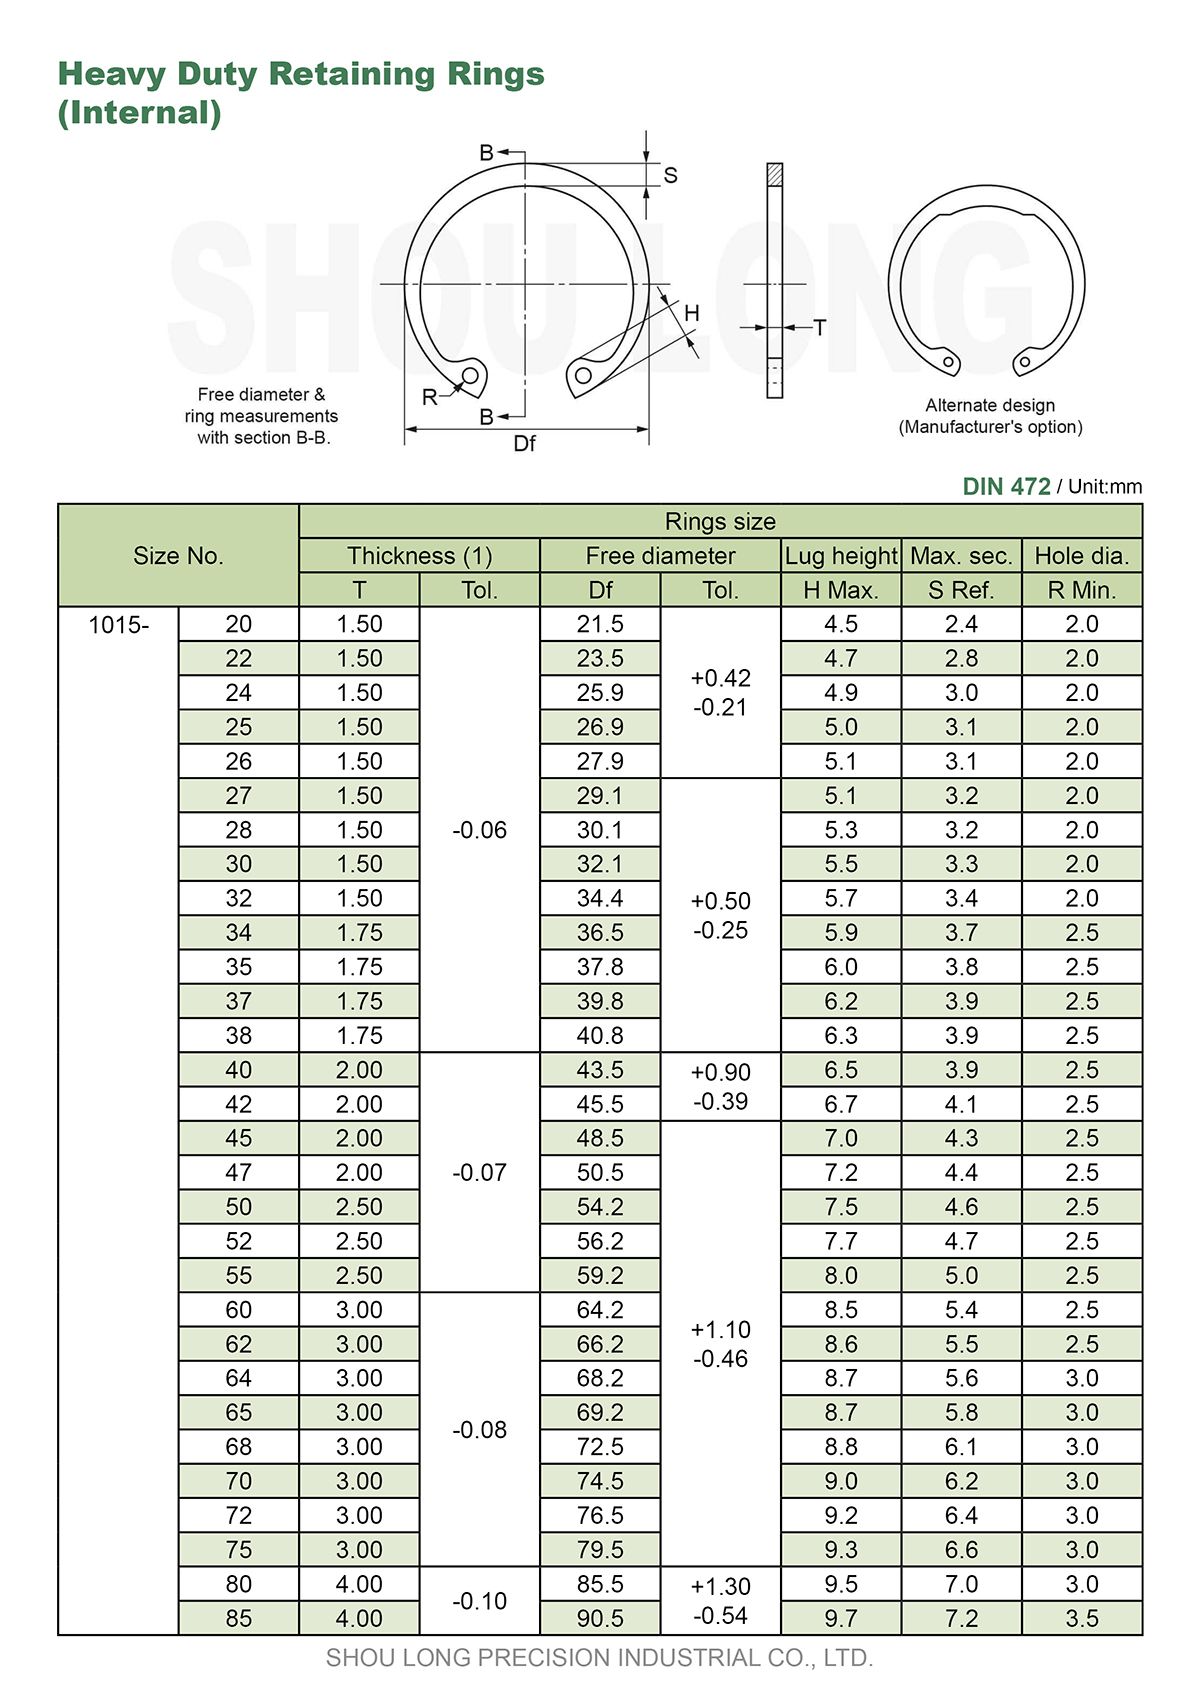 Spesifikasi Cincin Penahan Berat Metrik untuk Lubang DIN472-1